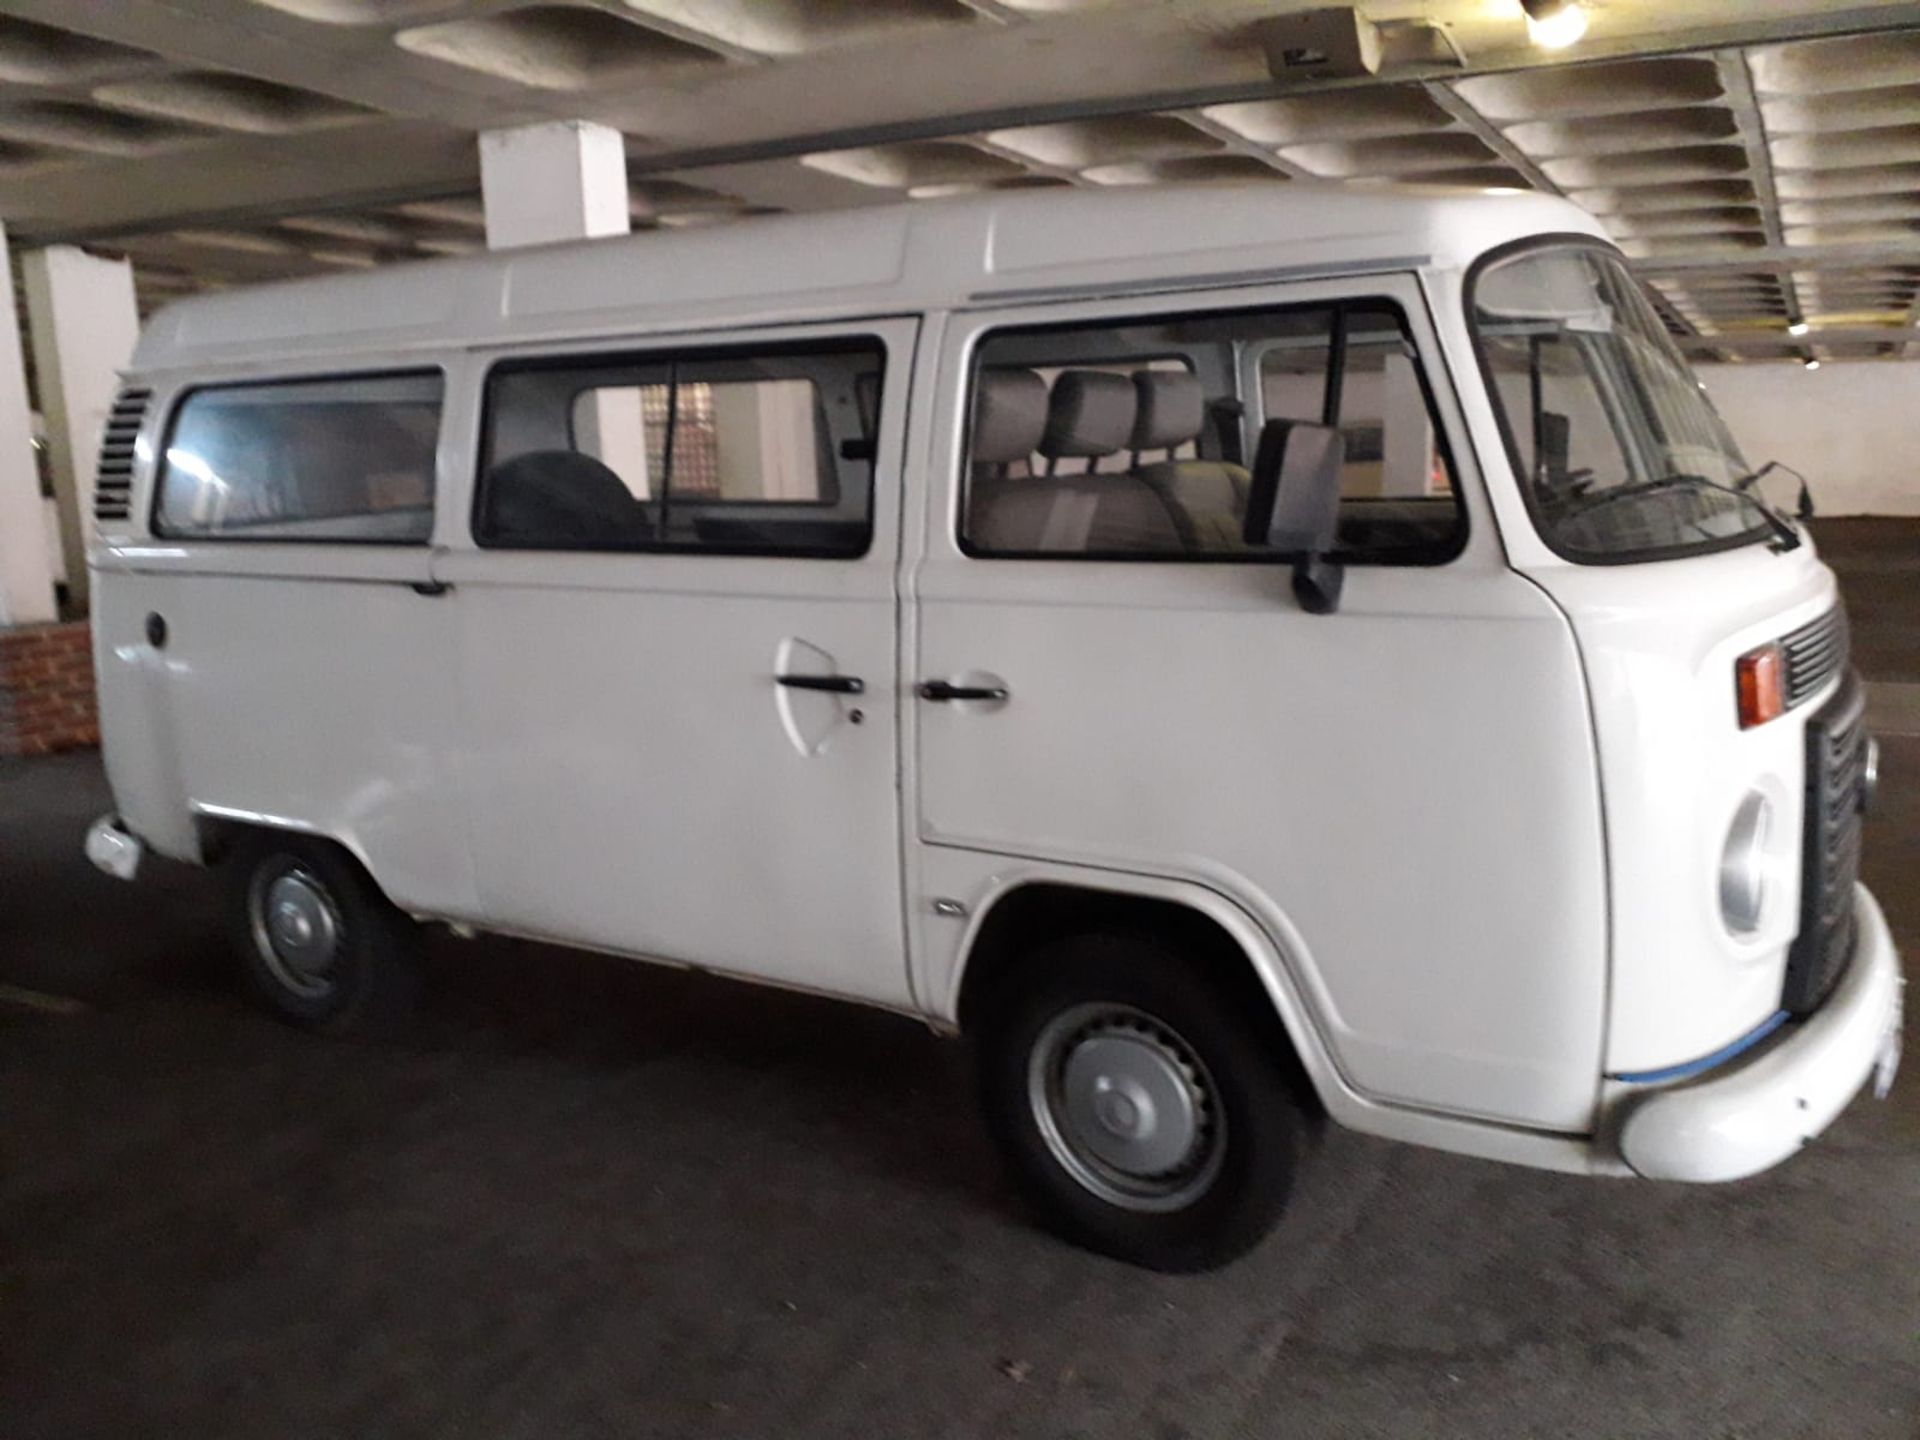 Volkswagen Camper Van - Brazilian Import (42k miles) - Image 2 of 14